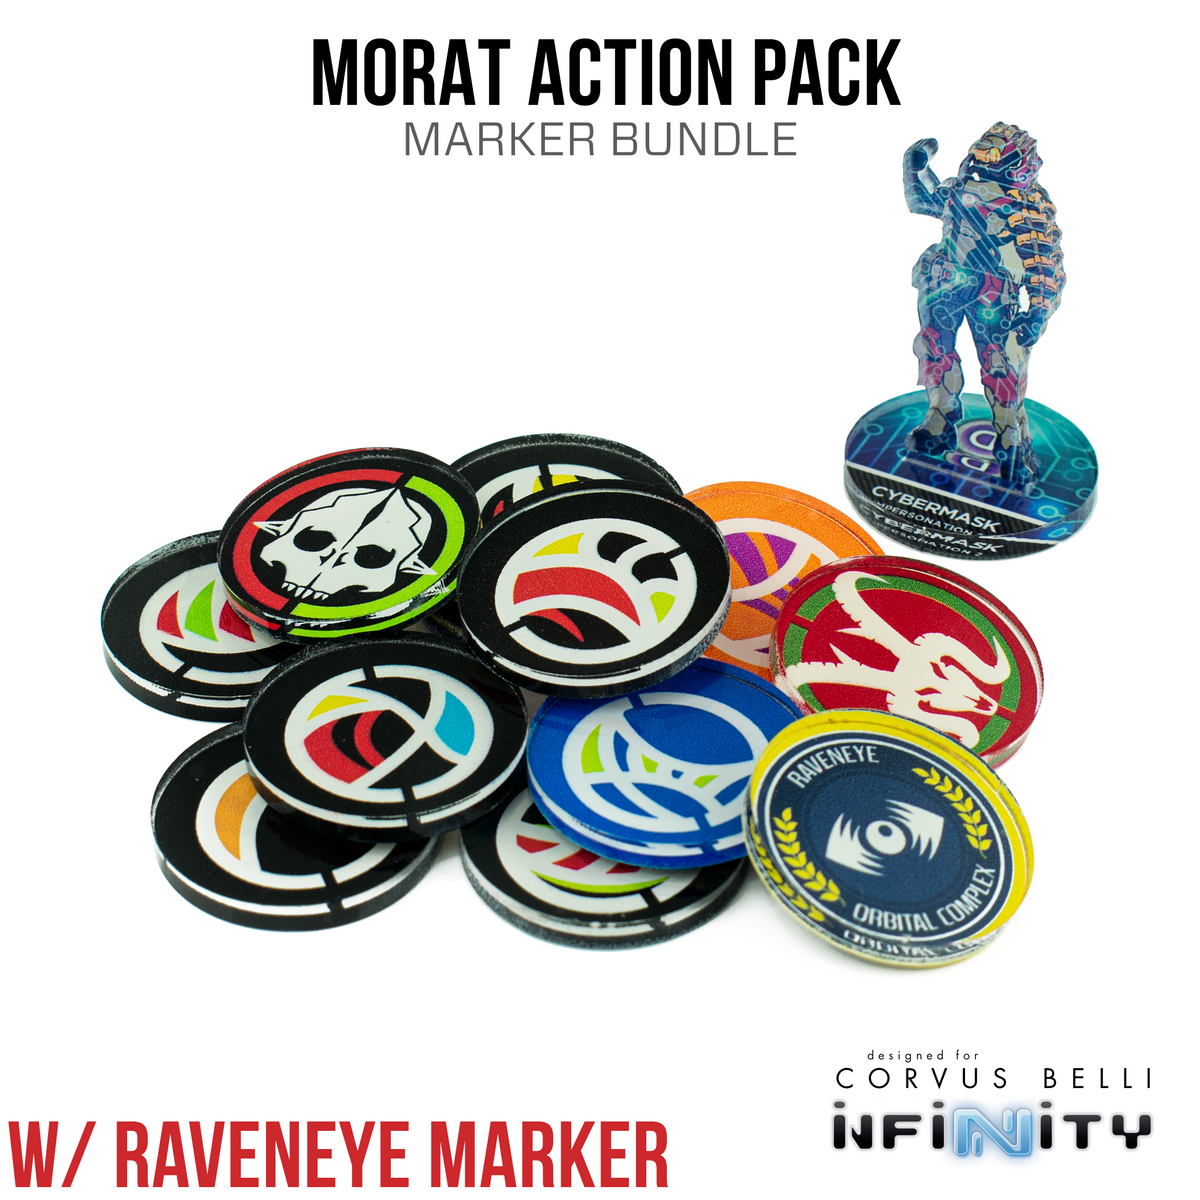 Paquete de marcadores del paquete de acción Morat